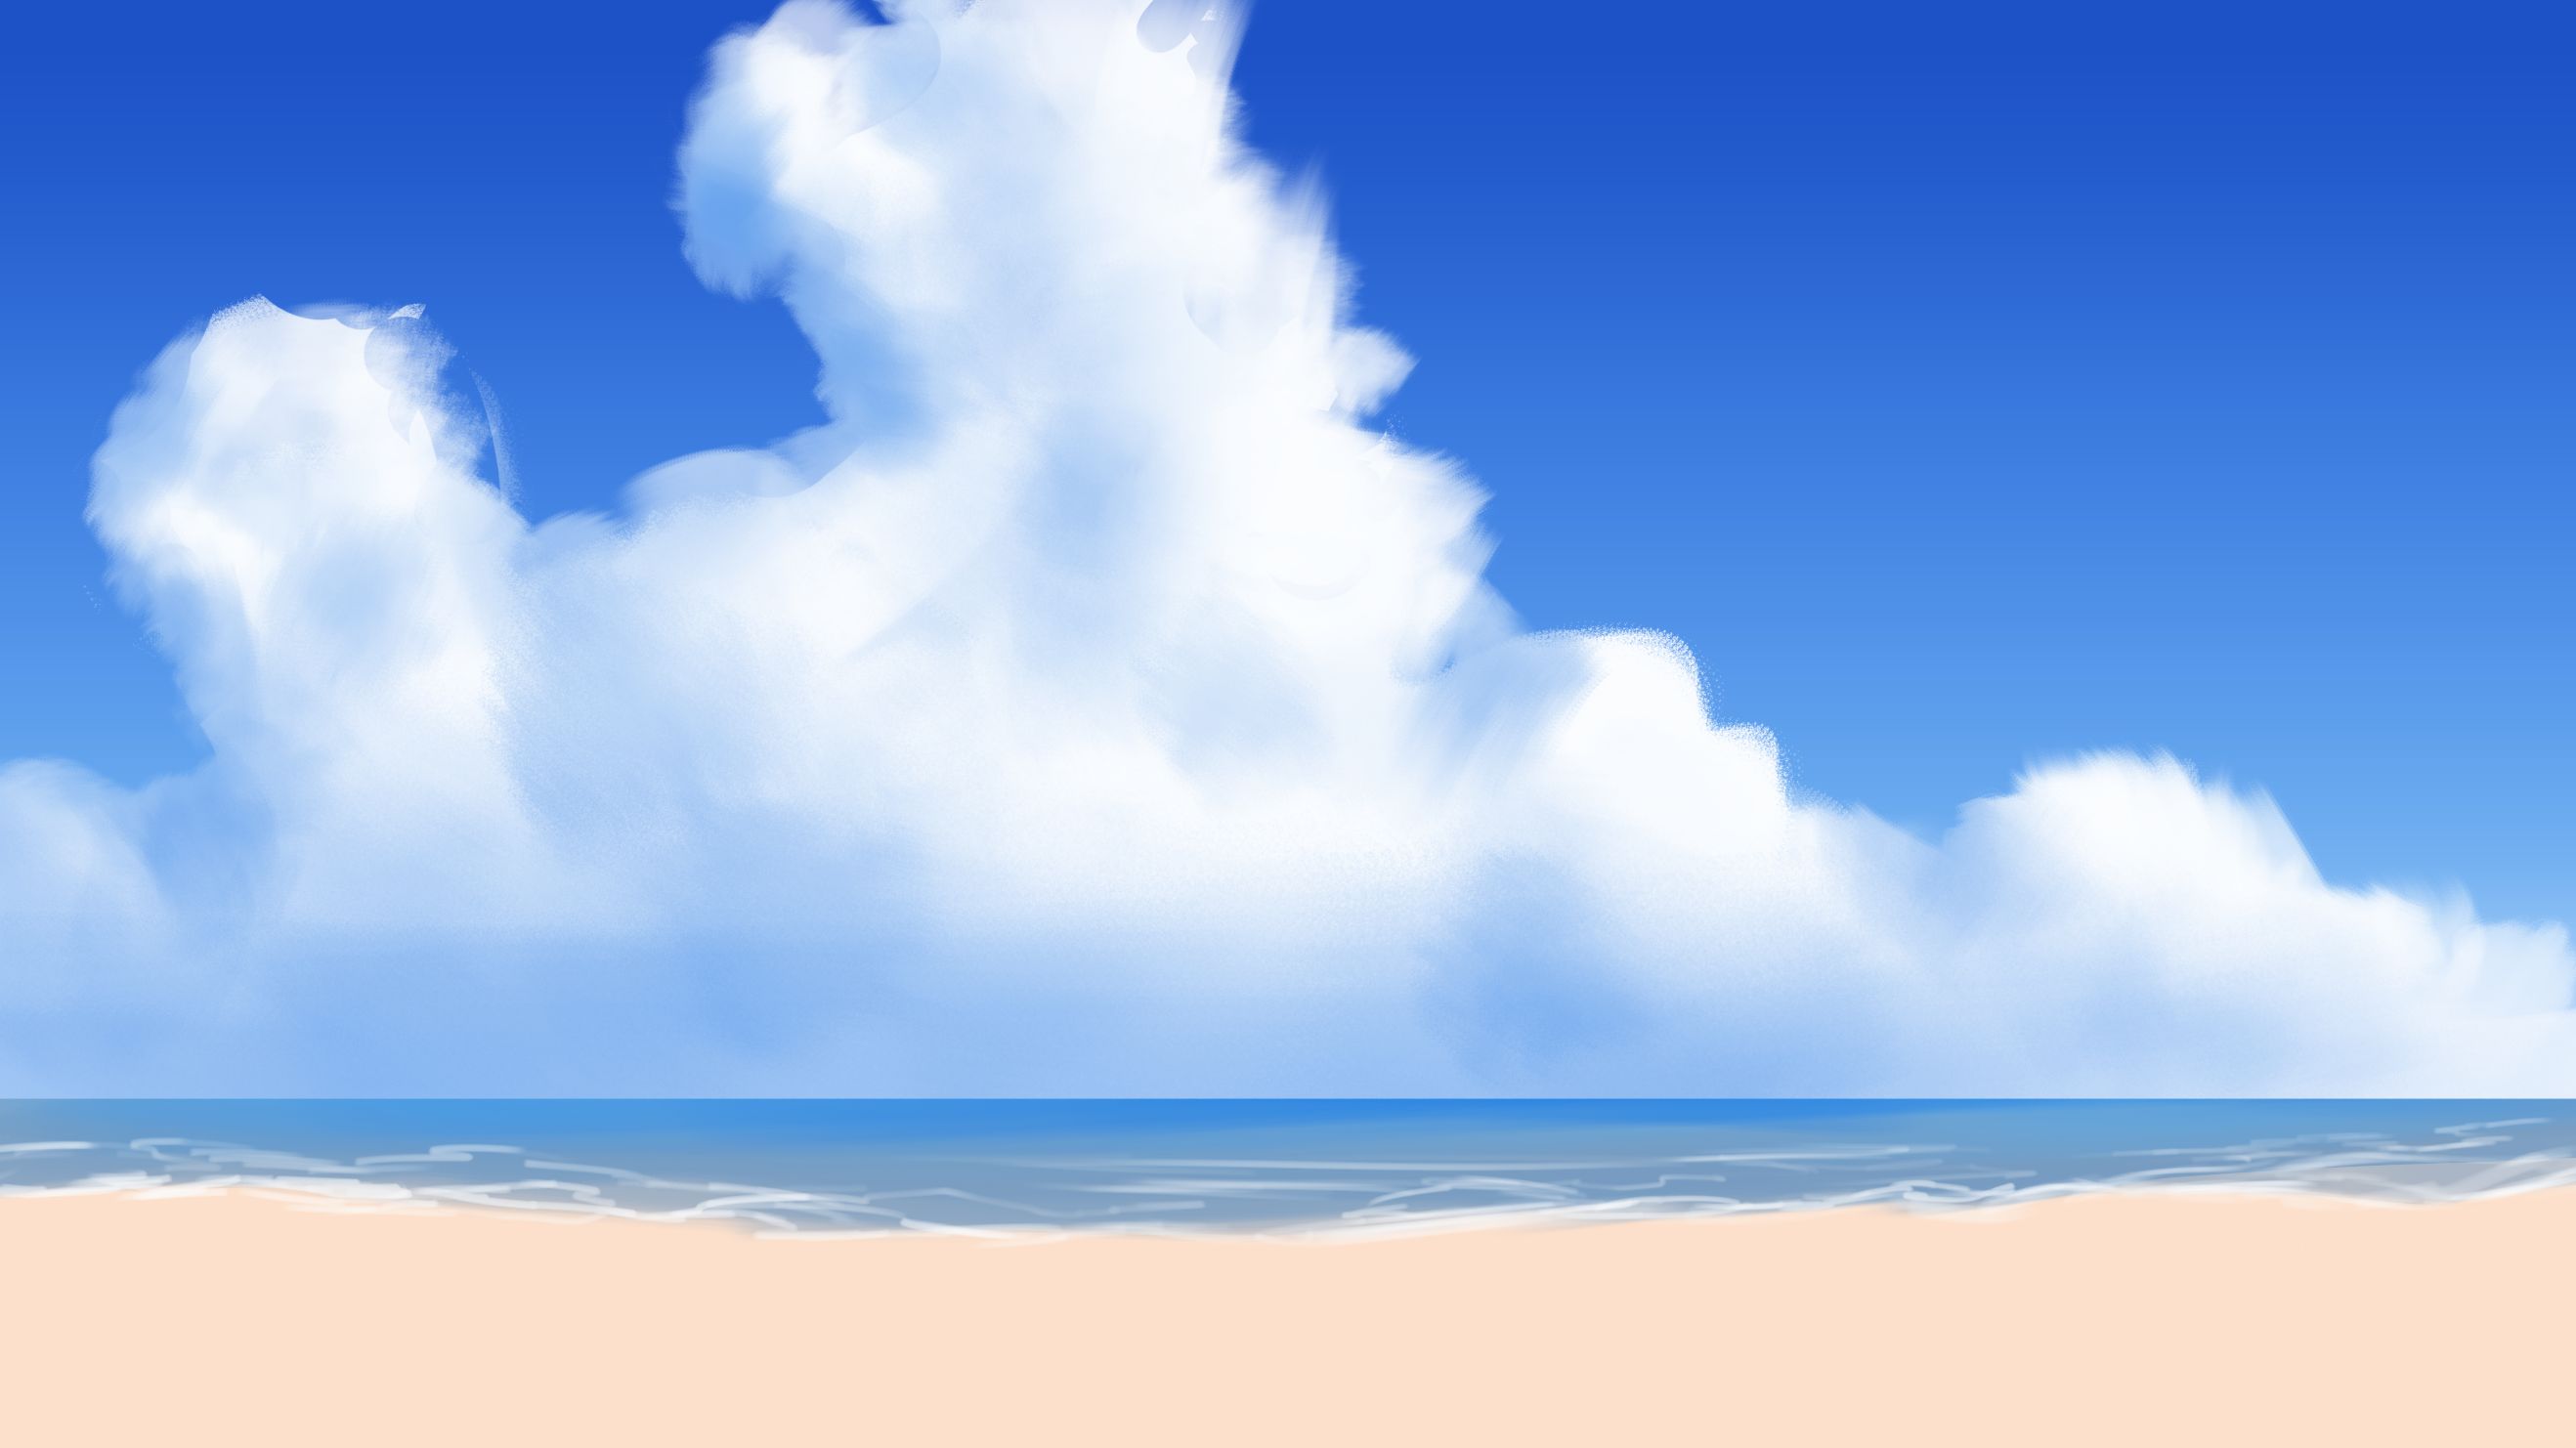 Скачать обои бесплатно Небо, Облака, Пляж, Песок, Океан, Земля/природа картинка на рабочий стол ПК